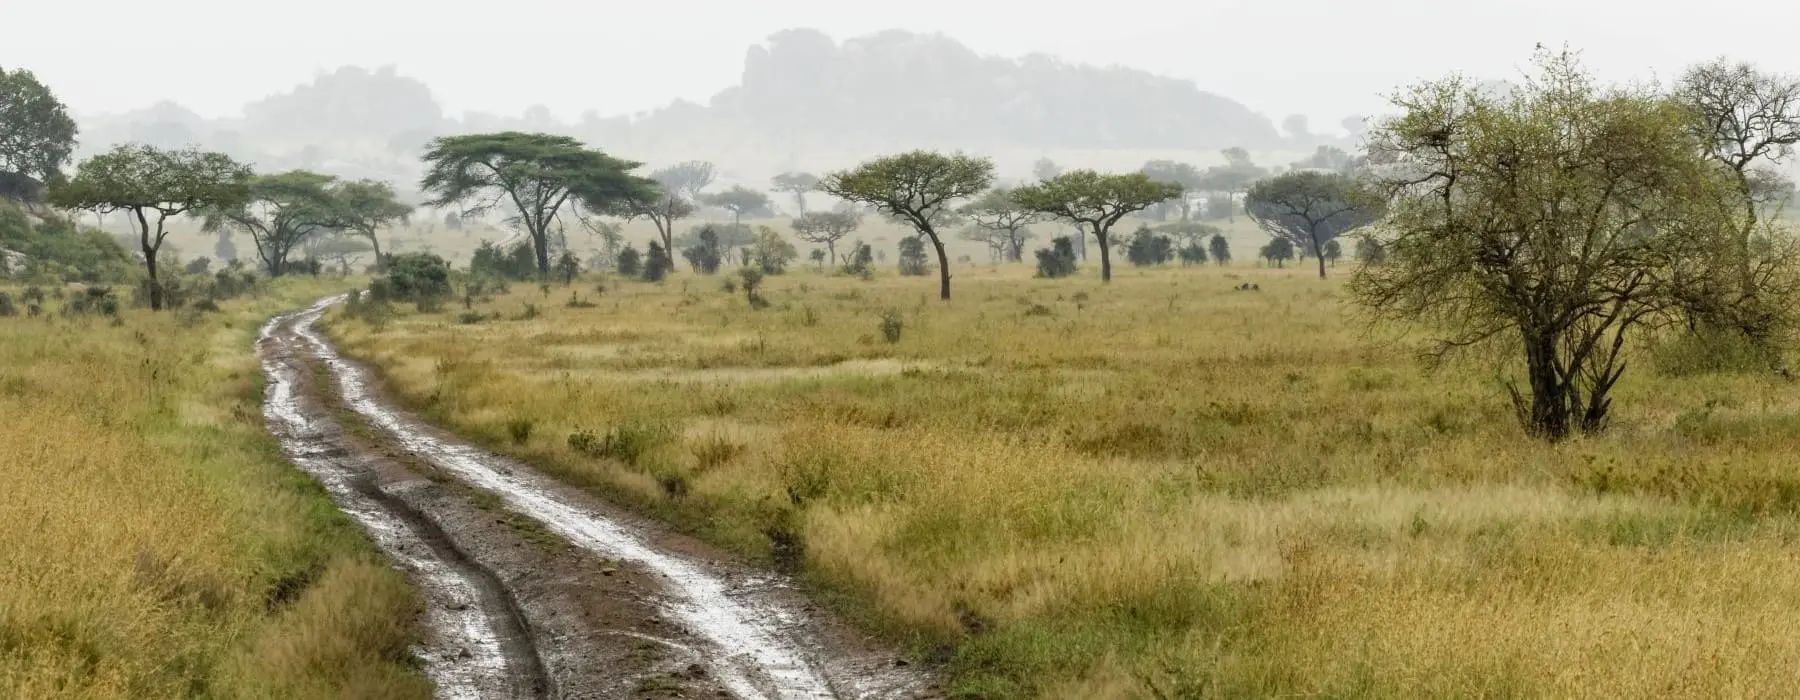 Matschige Straße im Serengeti Nationalpark in Tansania